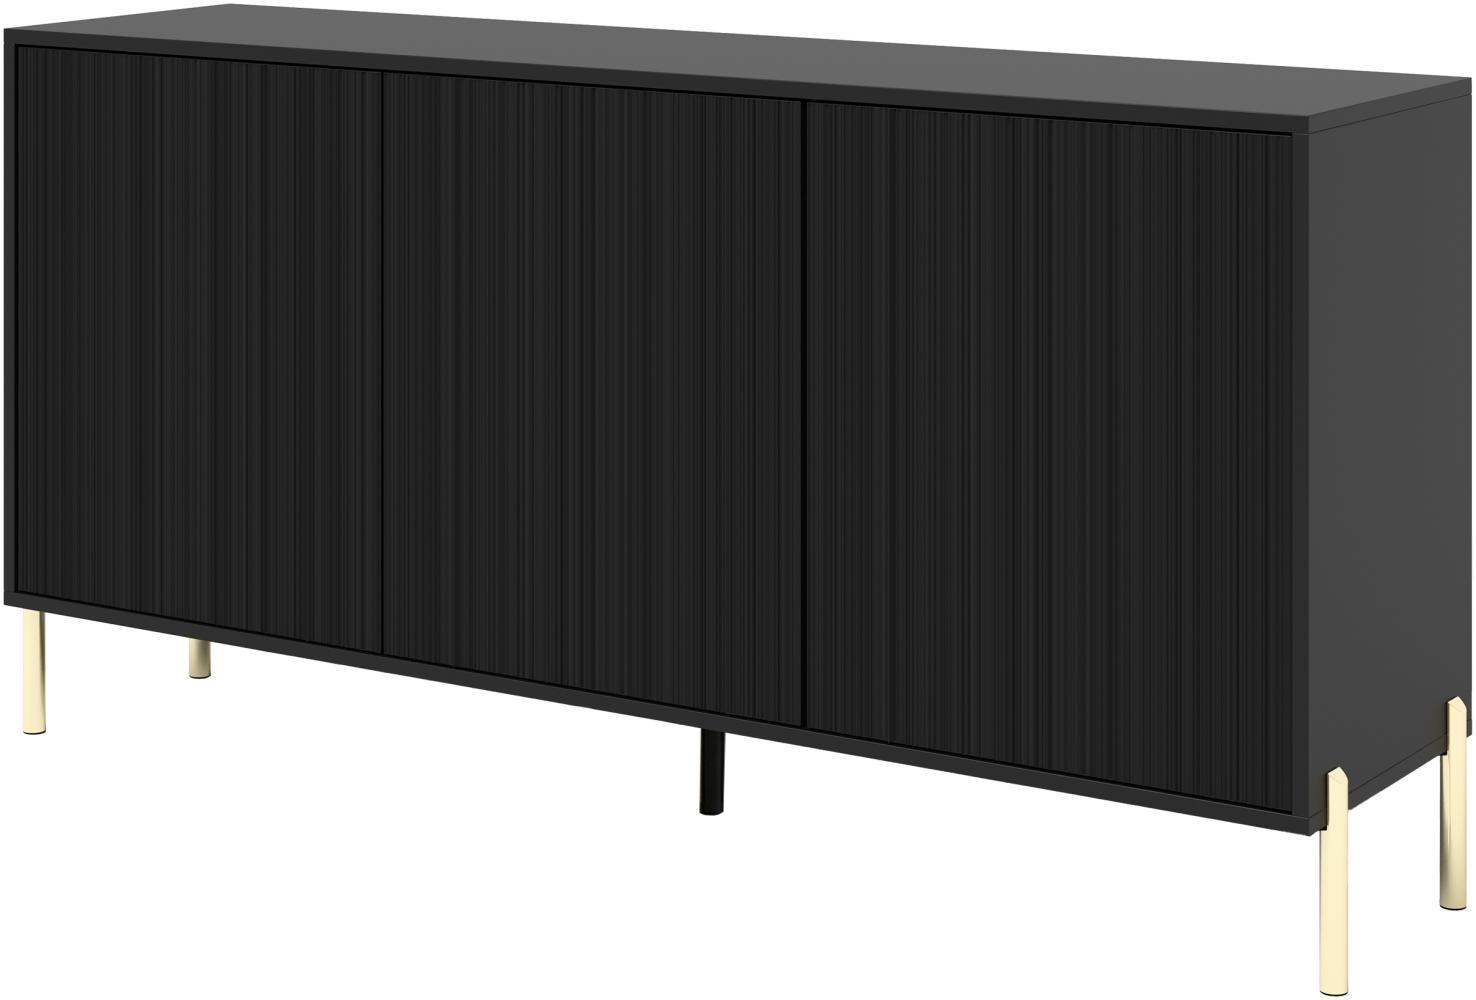 Kommode Onekro OS154 mit 3 Türen, innen 6 Fächer, Metallfüße, Push to Open (Farbe: Schwarz) Bild 1